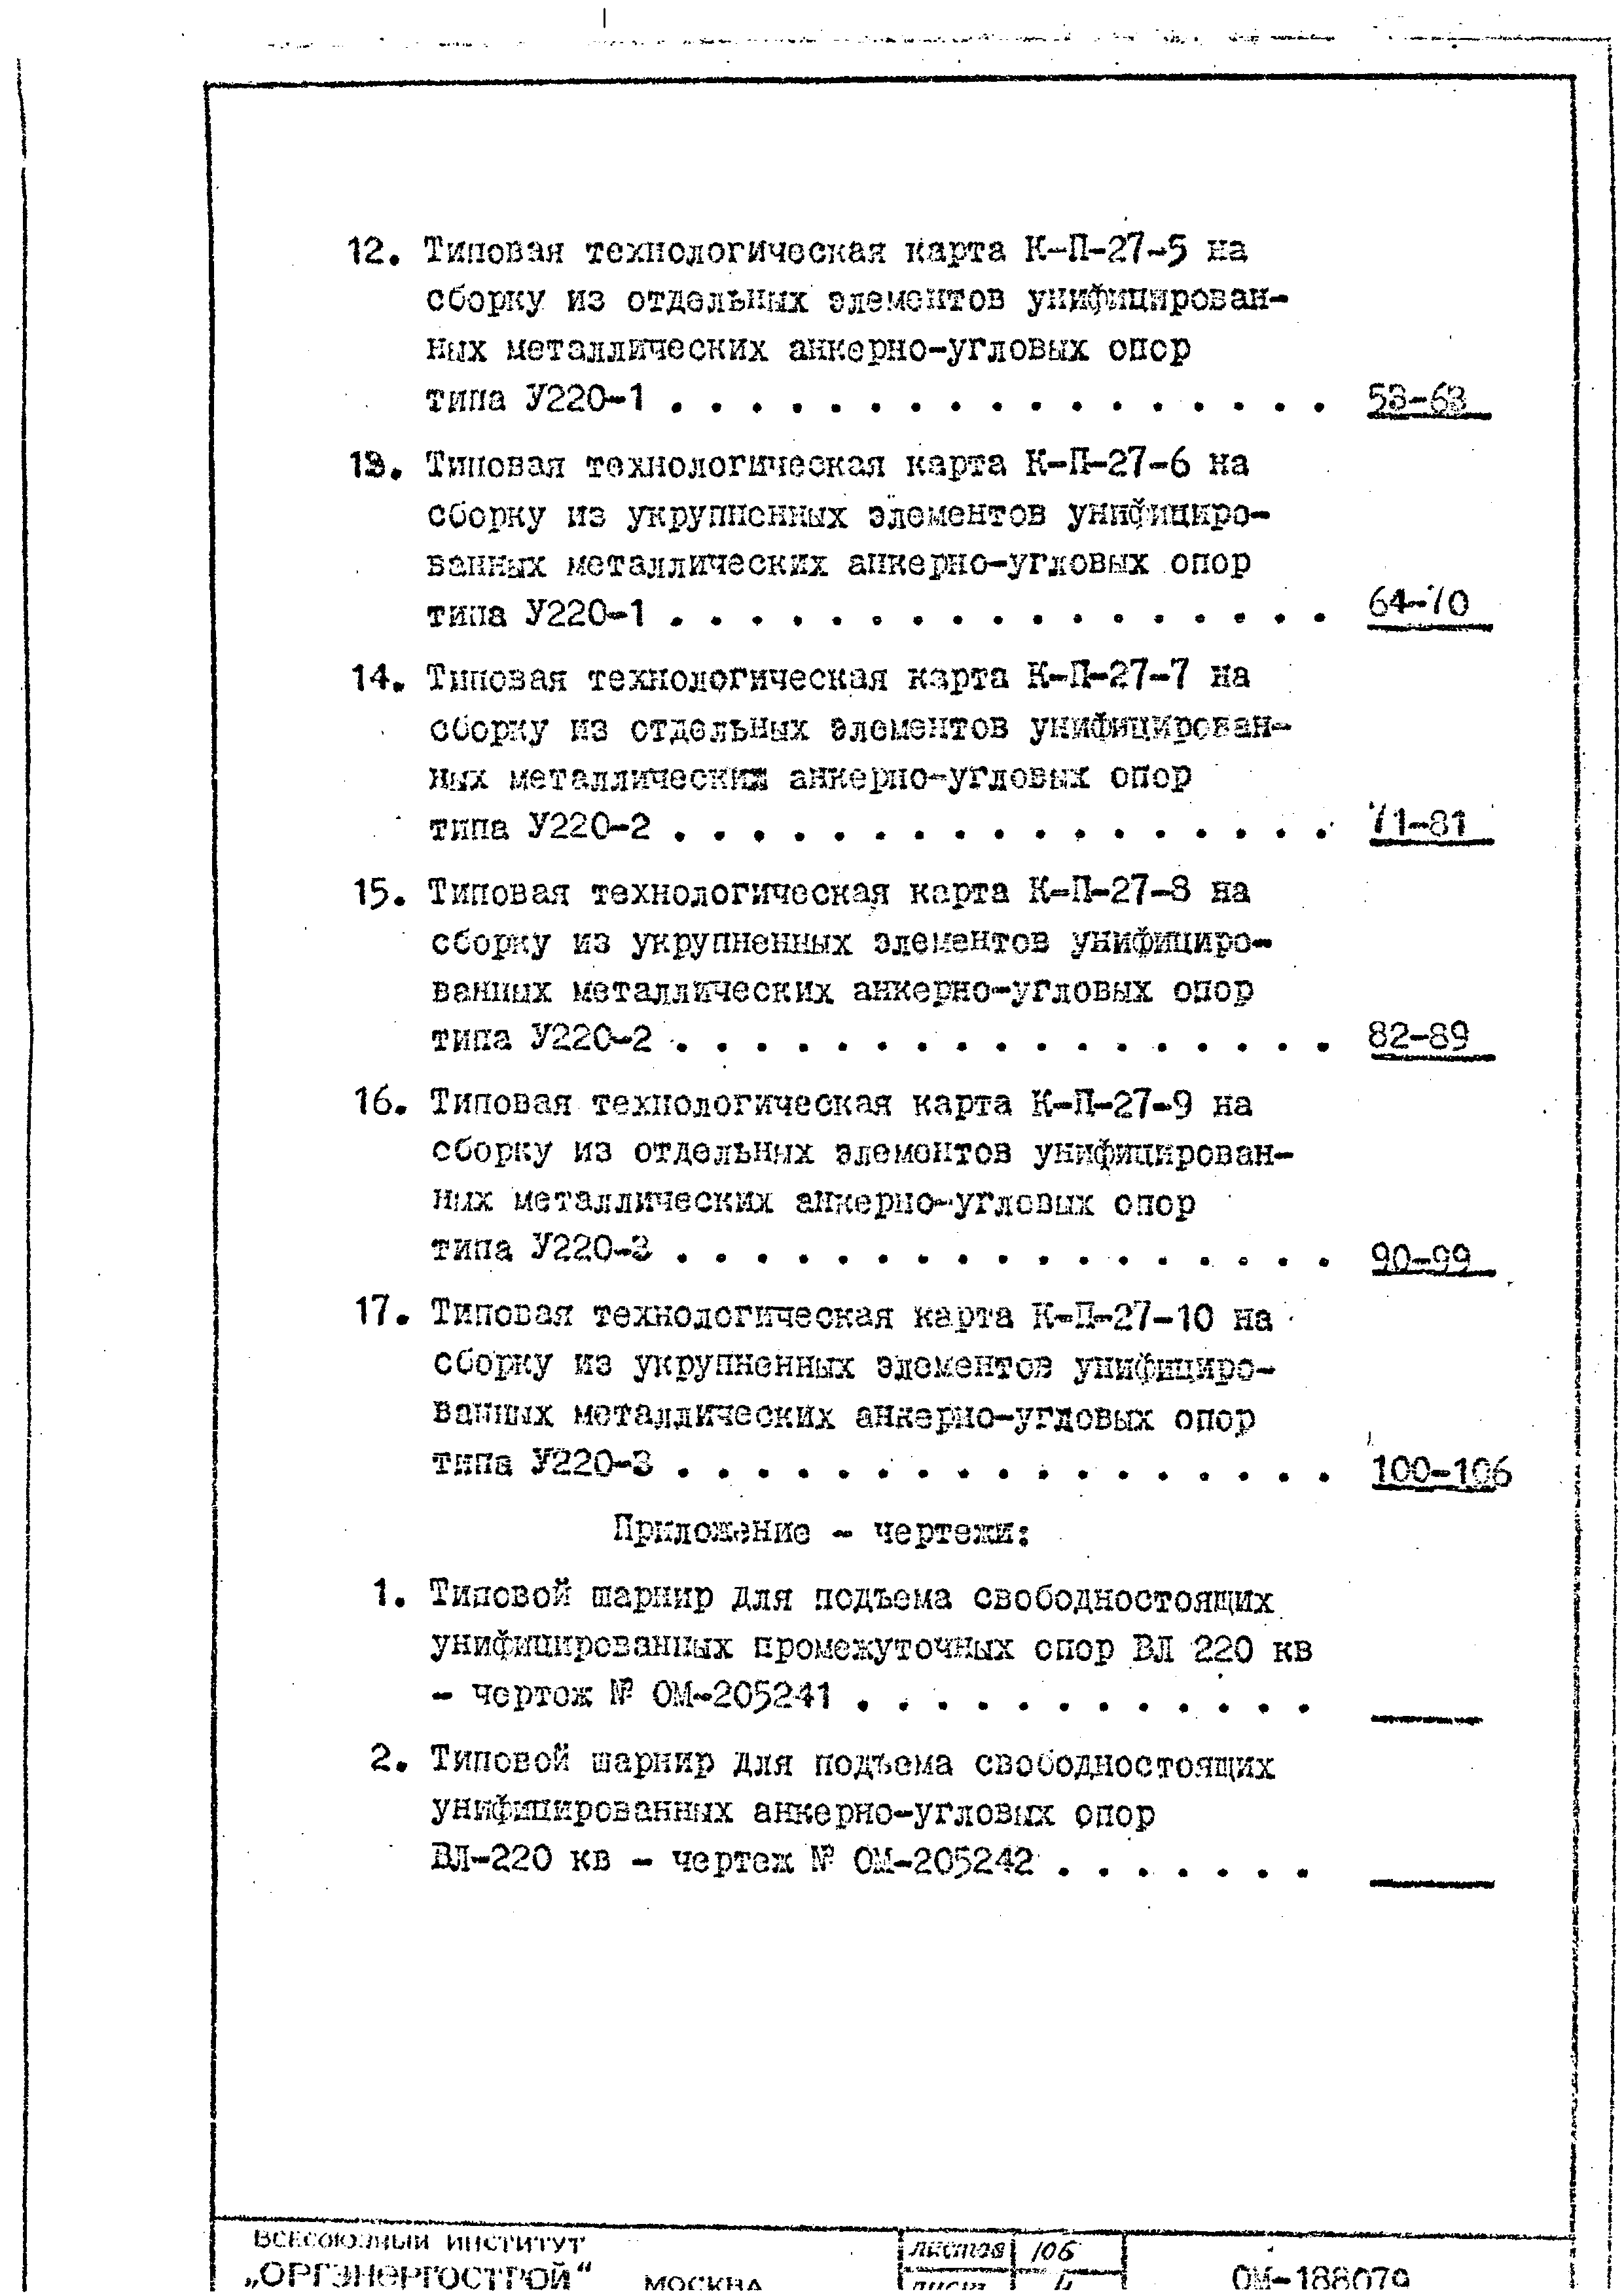 ТТК К-II-27-4